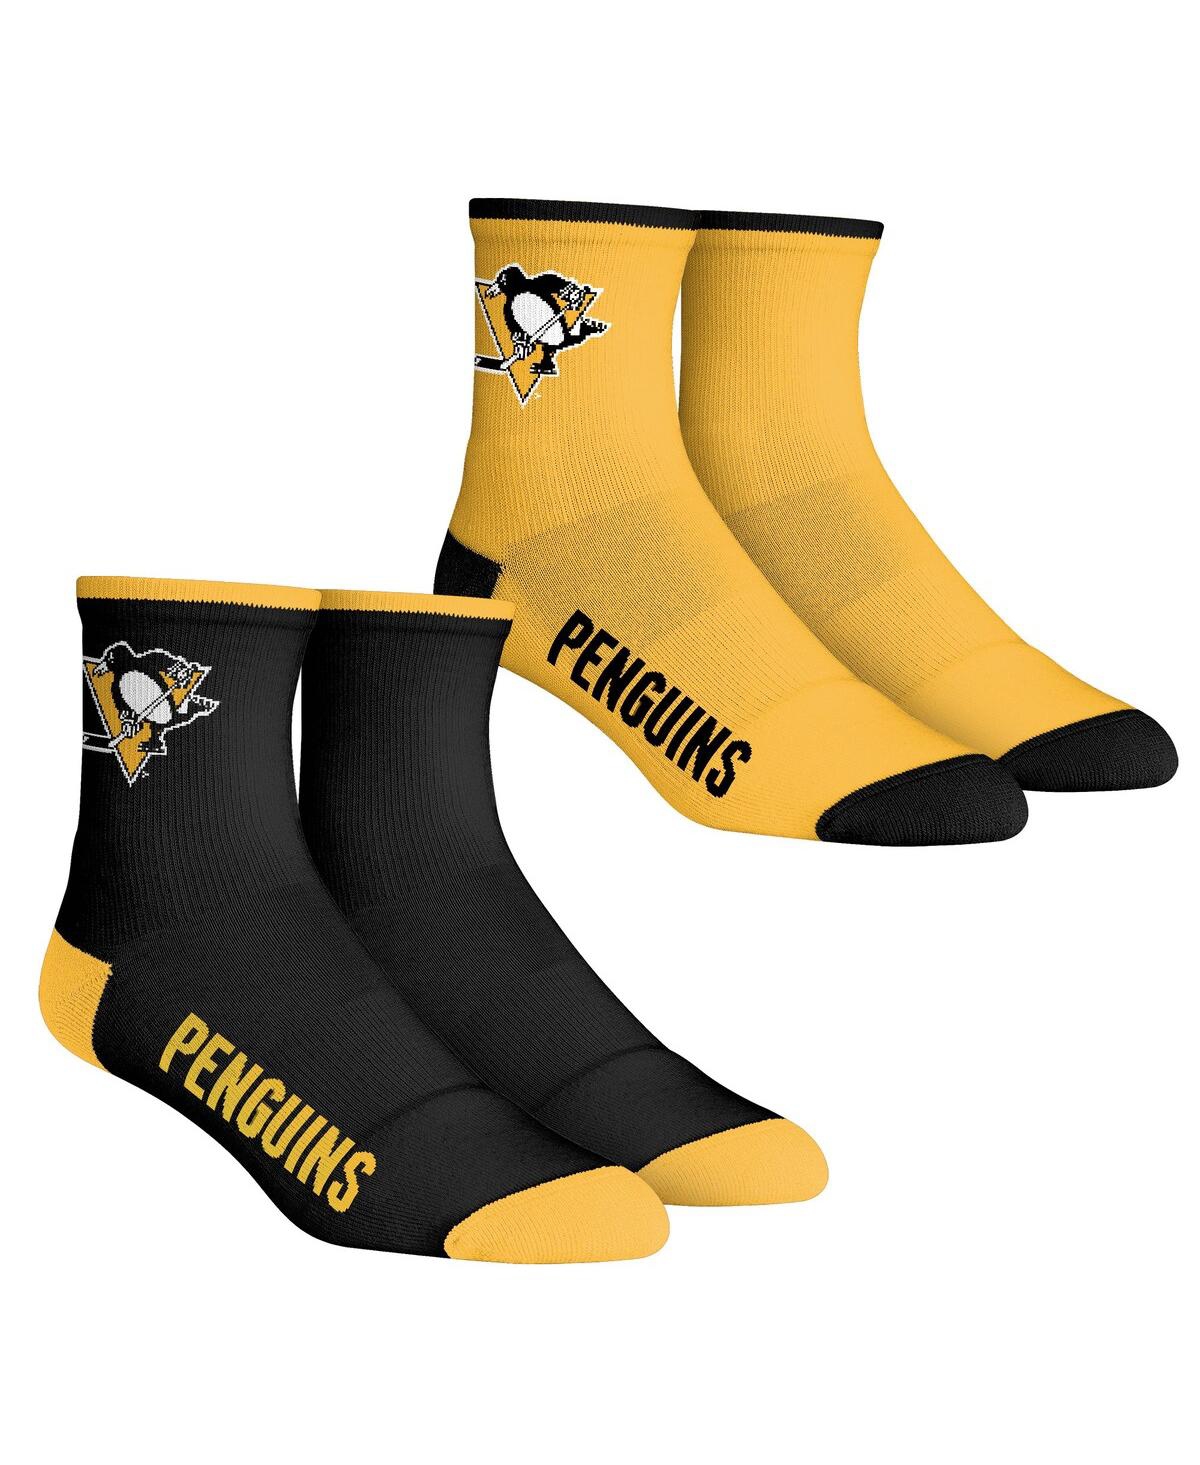 Men's Rock 'Em Socks Pittsburgh Penguins Core Team 2-Pack Quarter Length Sock Set - Black, Yellow